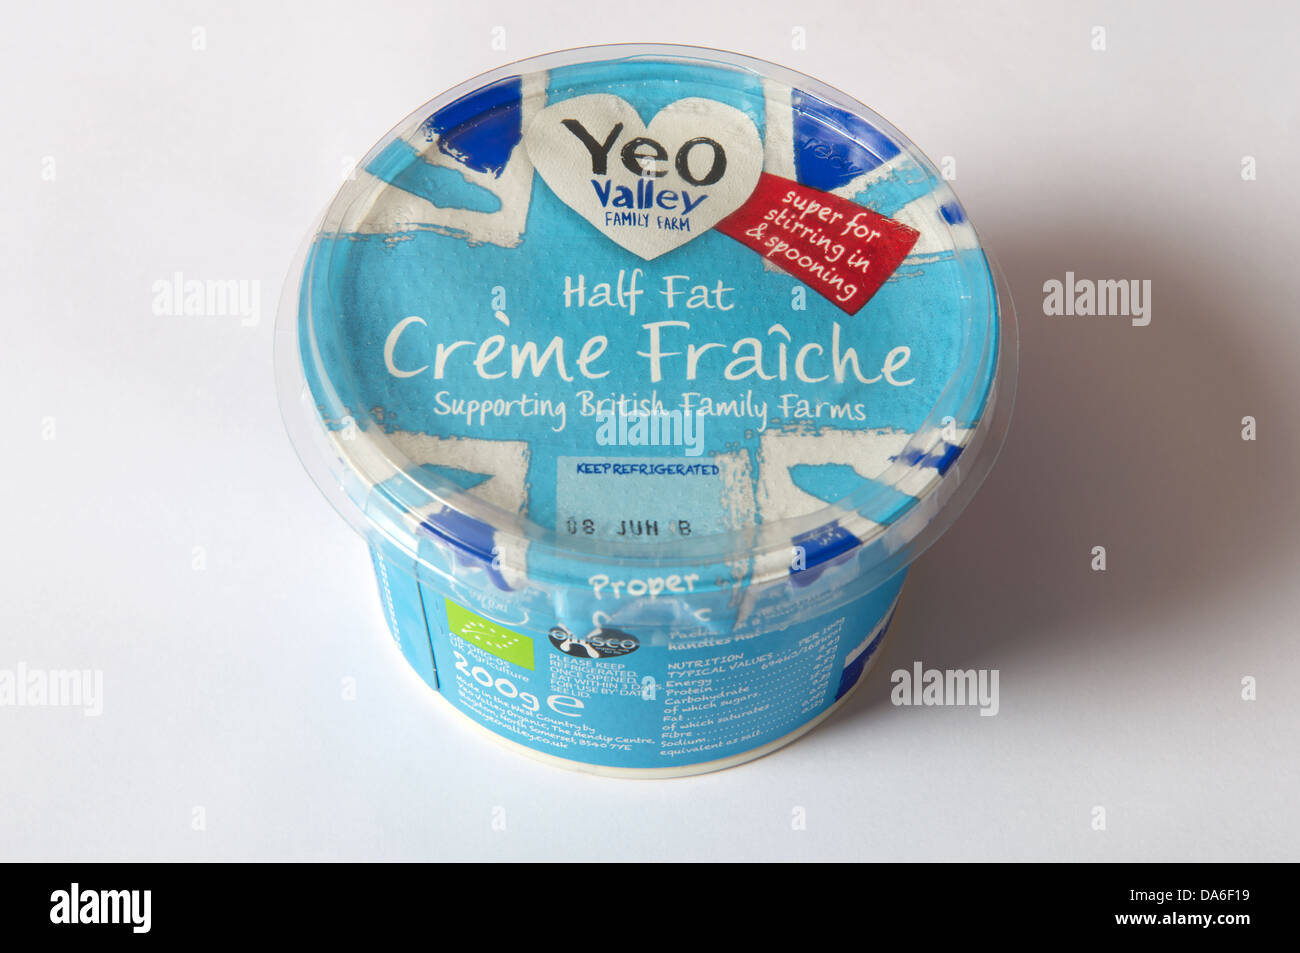 Yeo Valley family farm metà fat crème fraiche Foto Stock